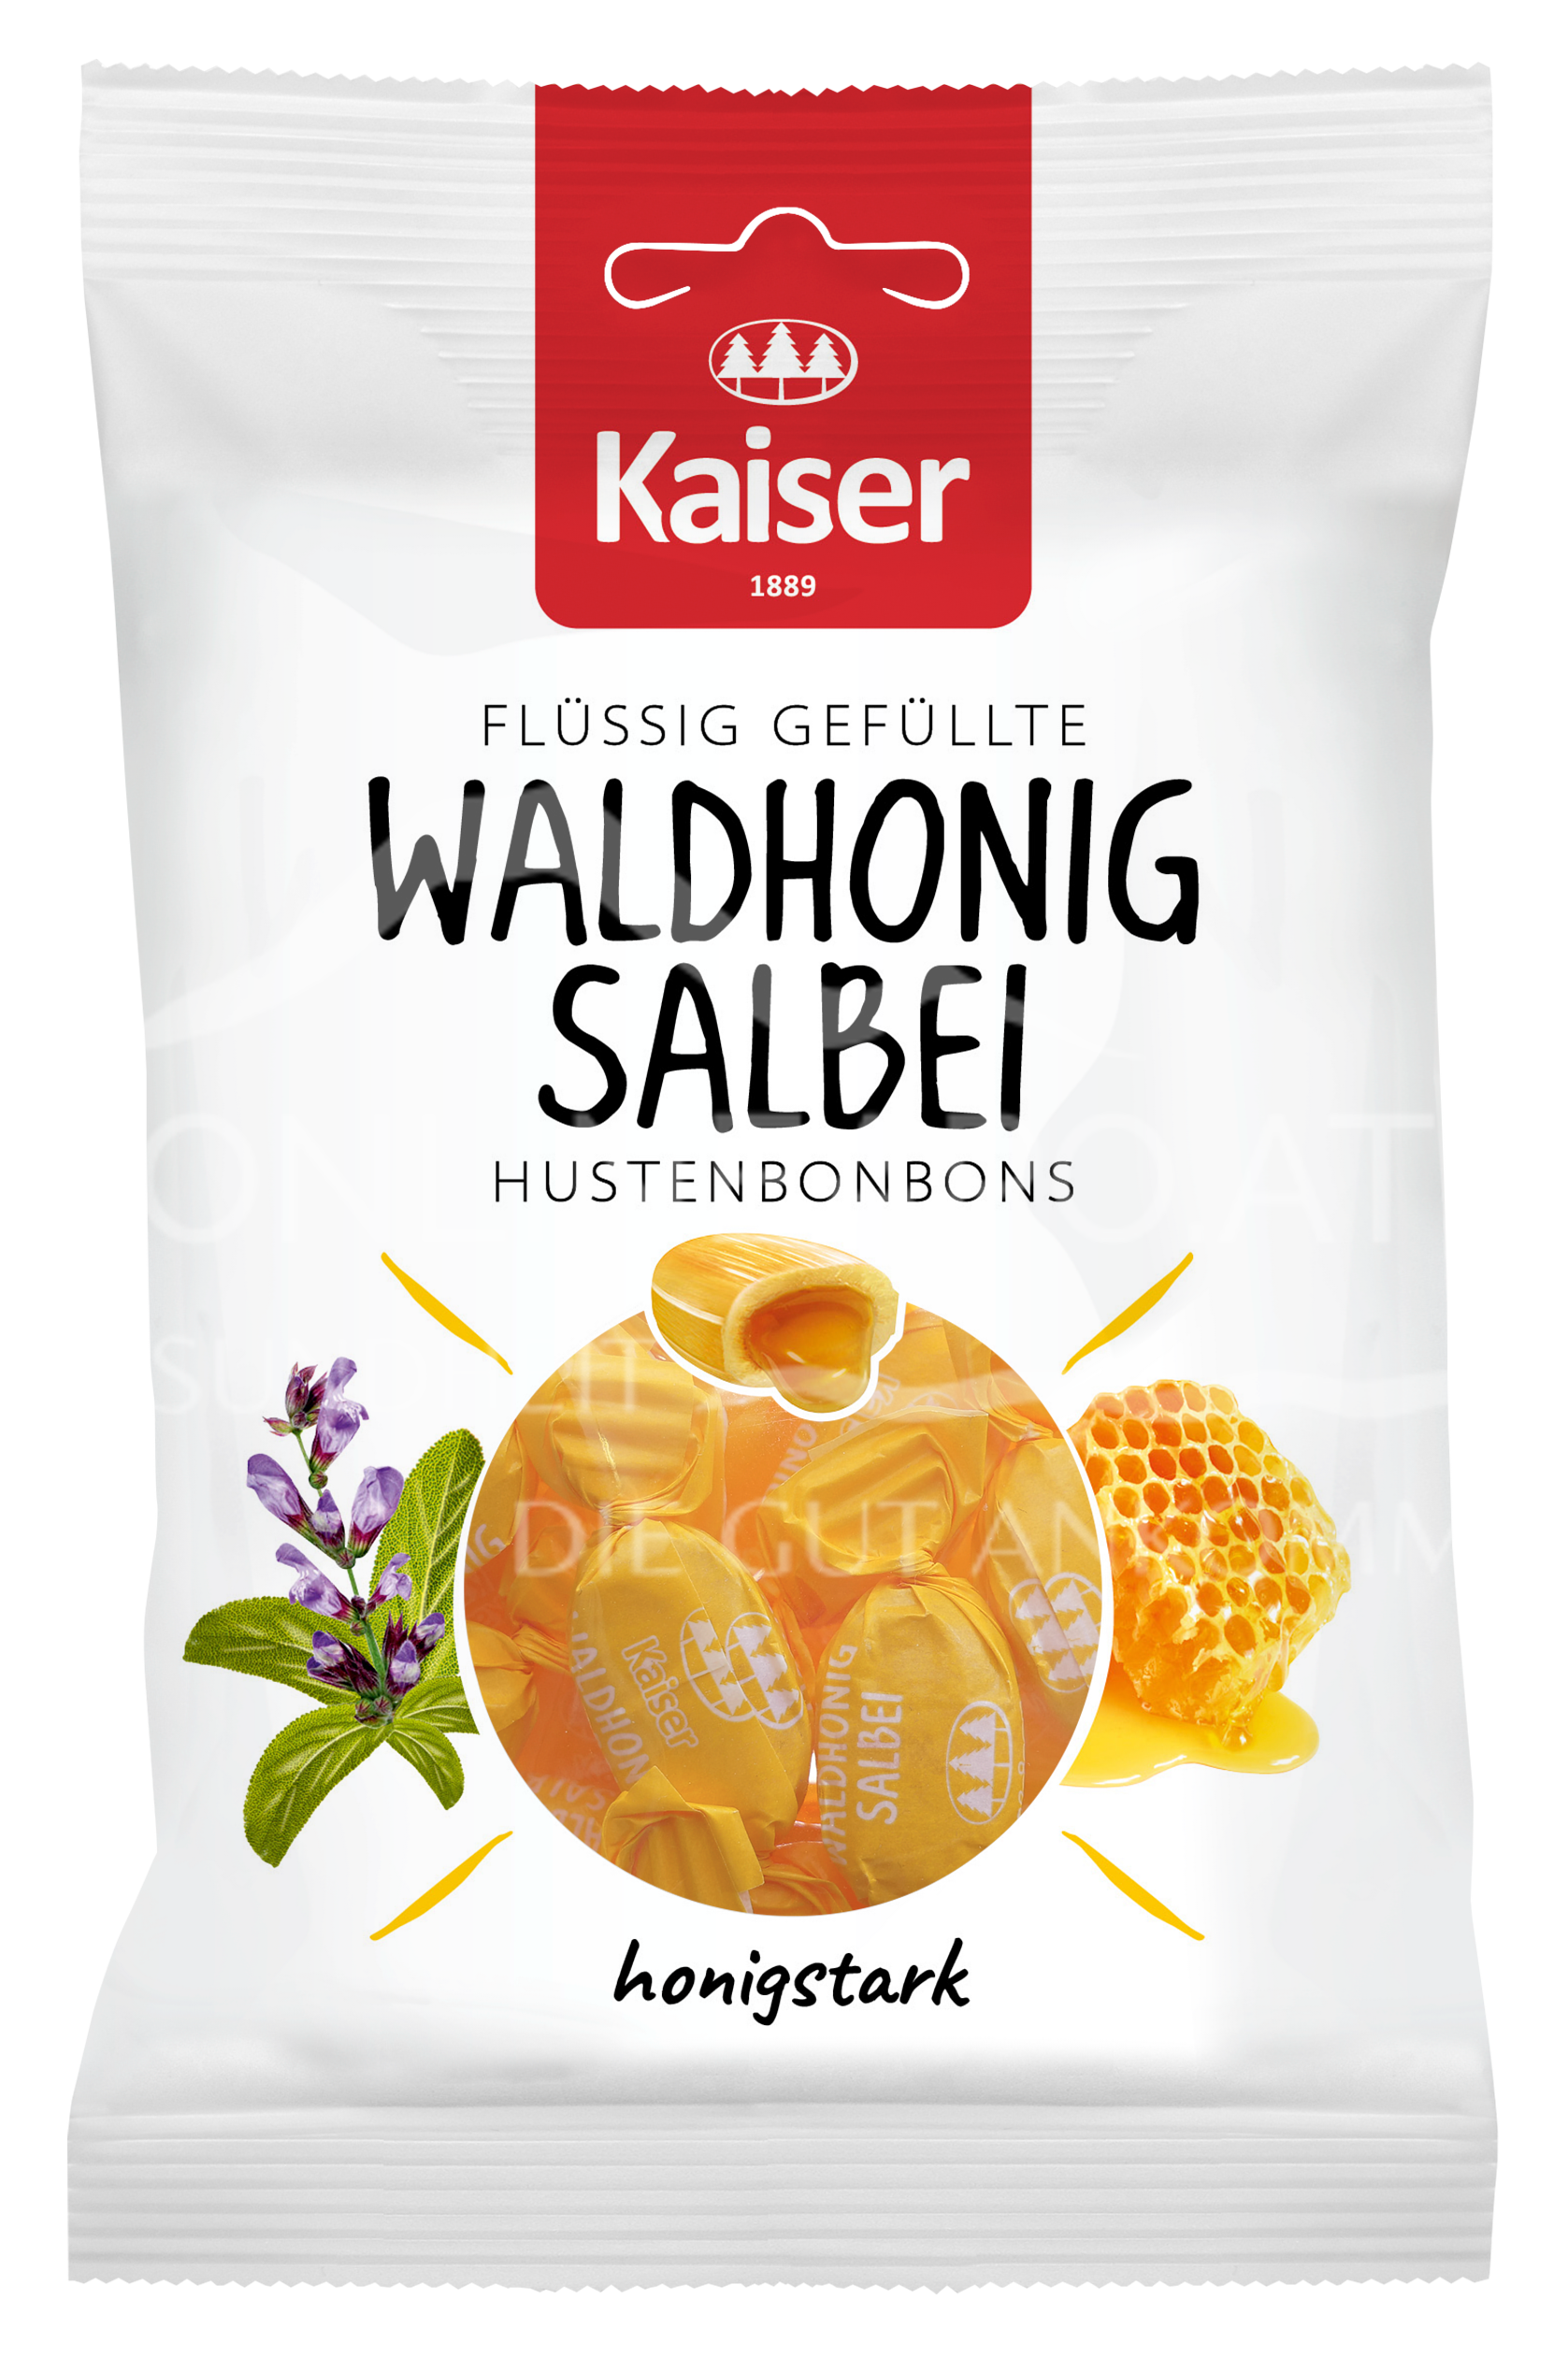 Kaiser Waldhonig Salbei Hustenbonbons